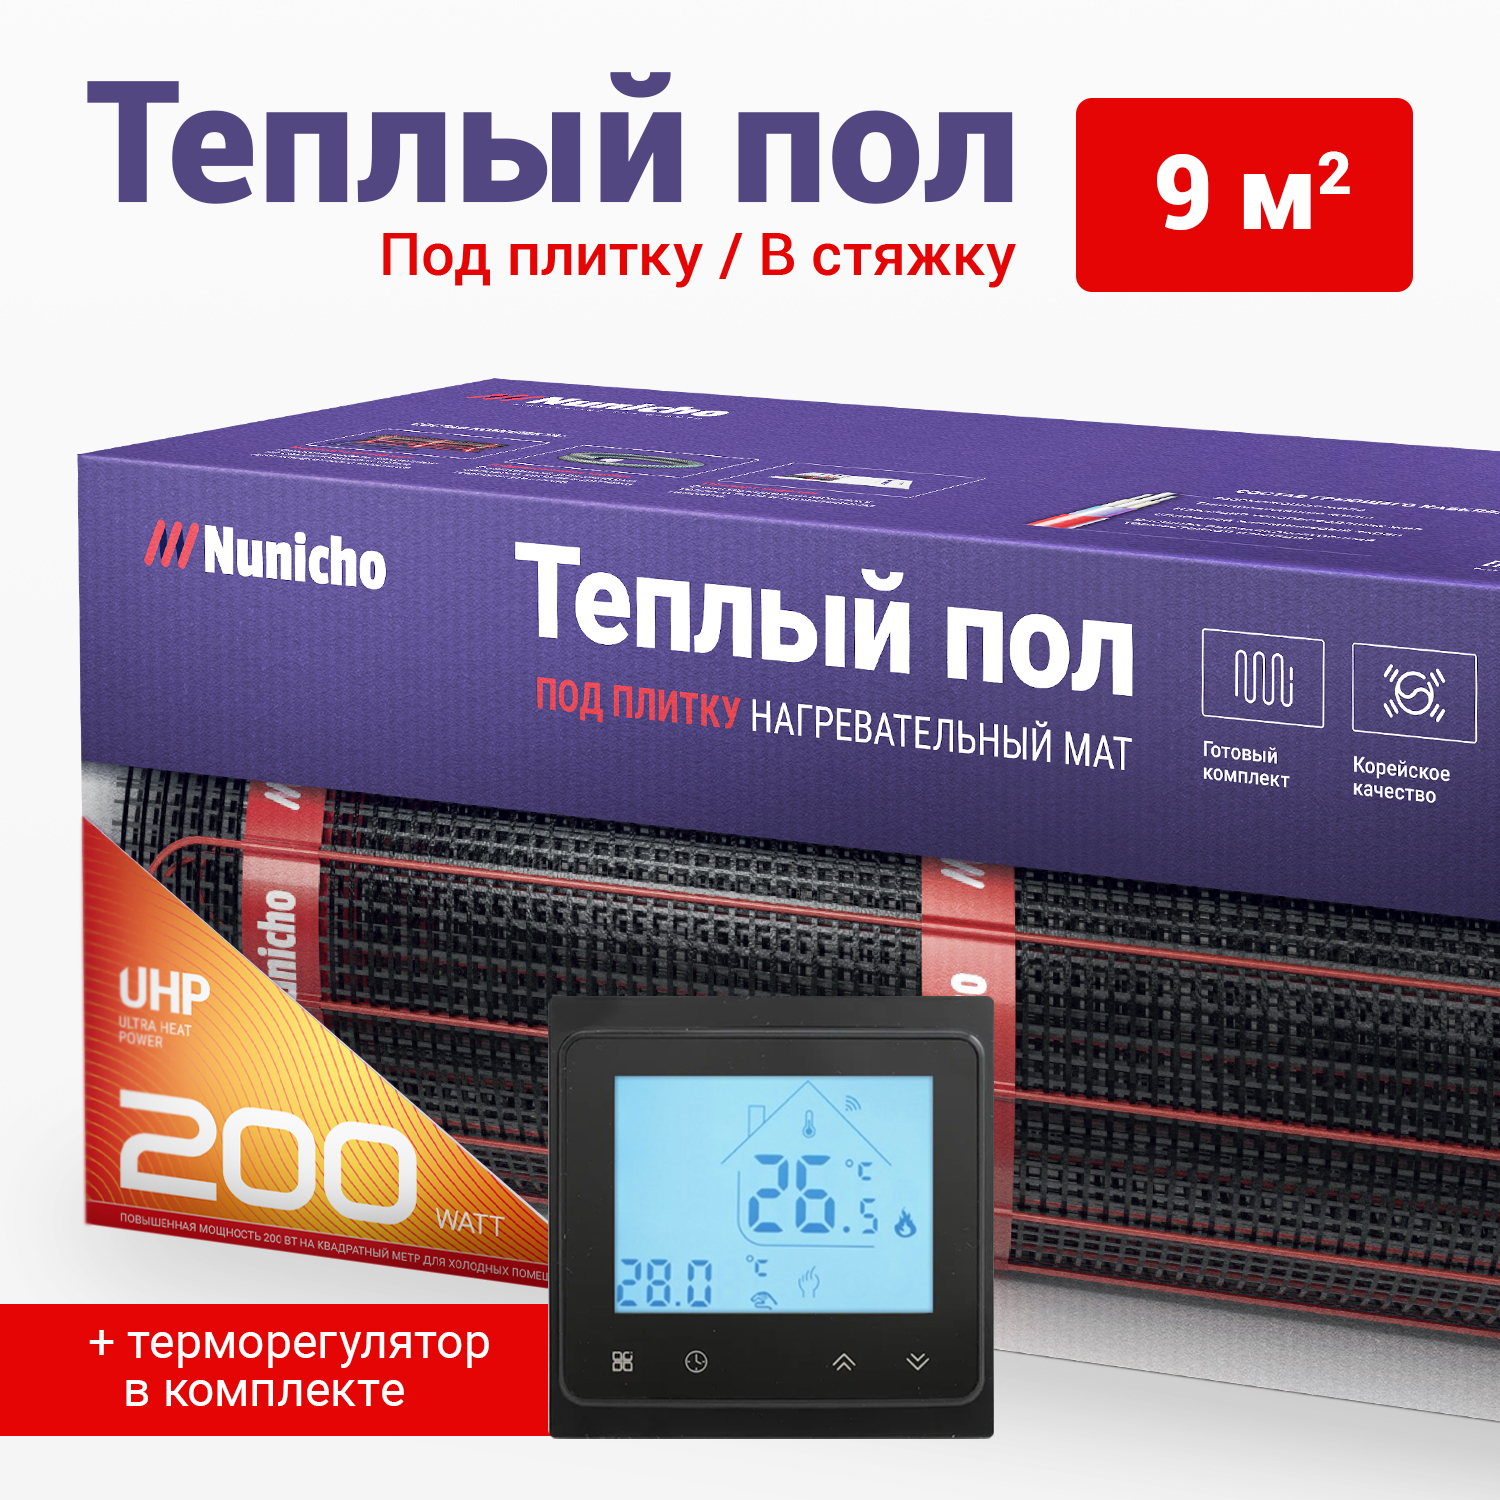 фото Теплый пол под плитку в стяжку nunicho 9 м2, 200 вт/м2 со smart-терморегулятором черным